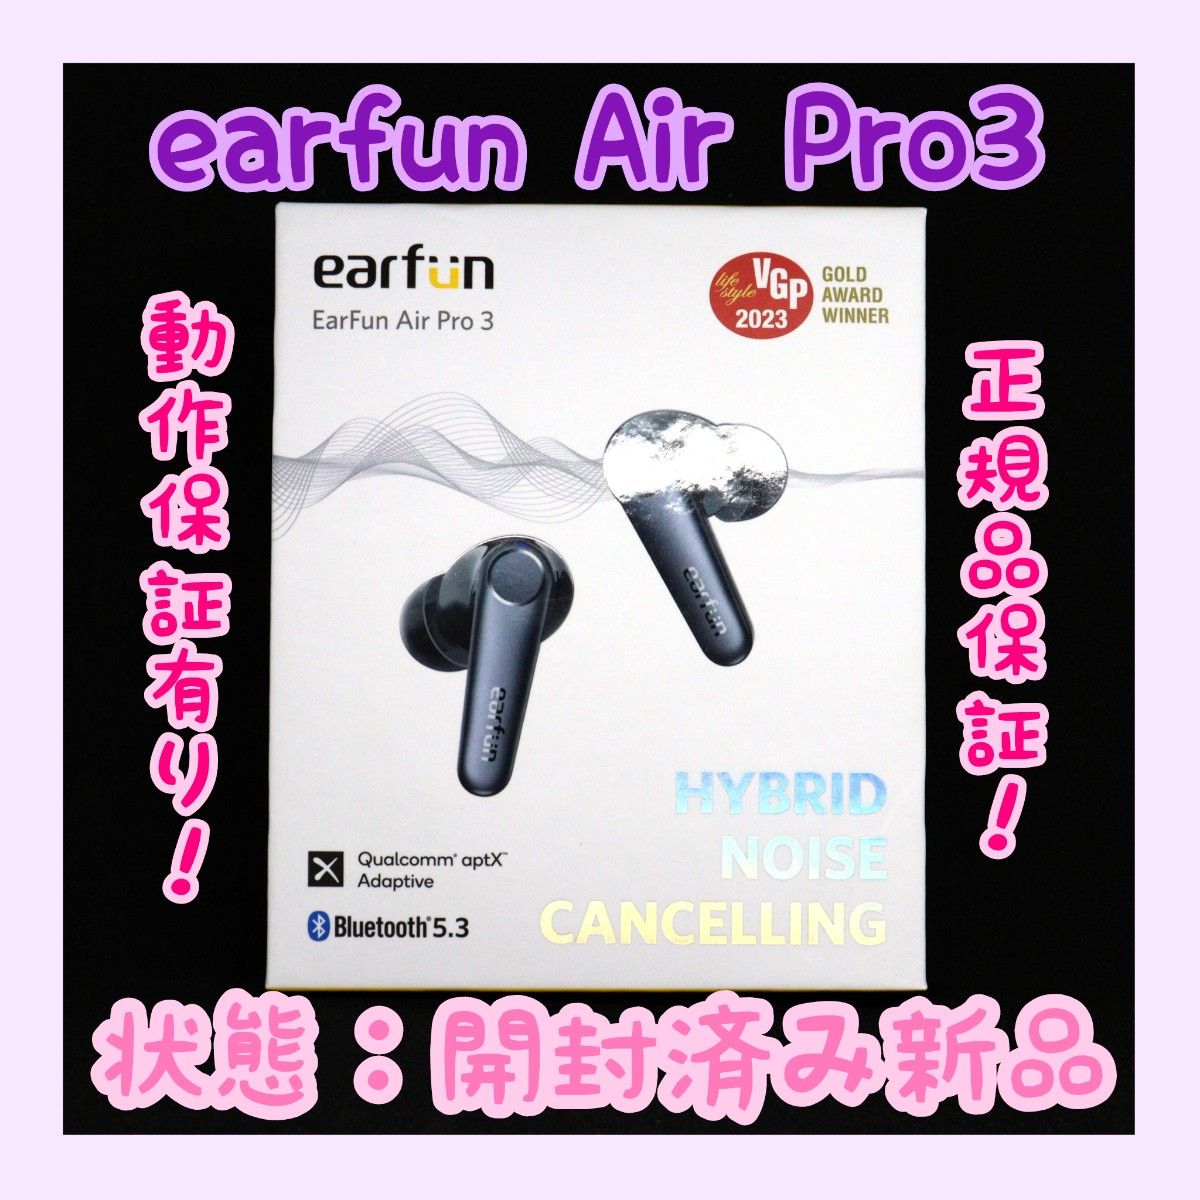 【ほぼ新品】EarFun Air Pro 3 Bluetooth ワイヤレスイヤホン ブラック